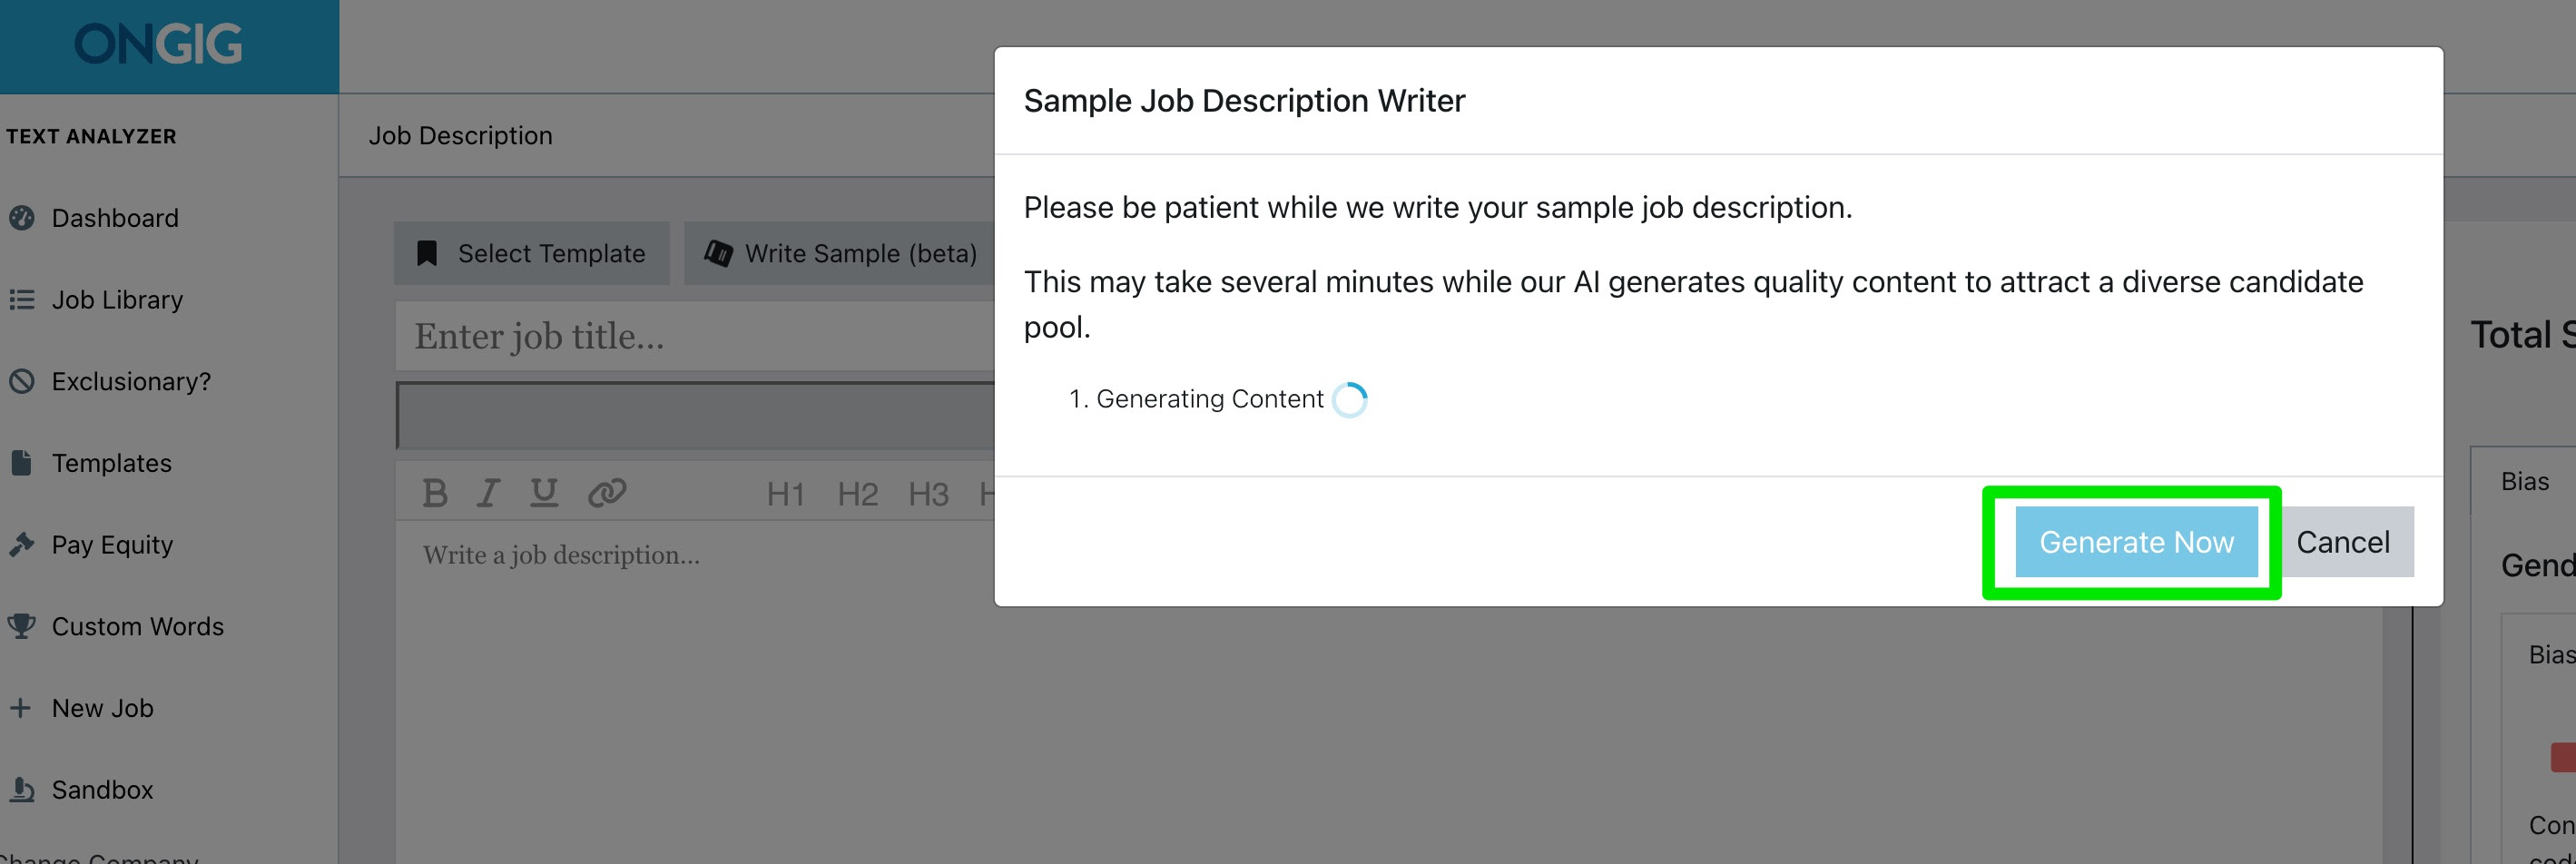 automated job description builder generate now